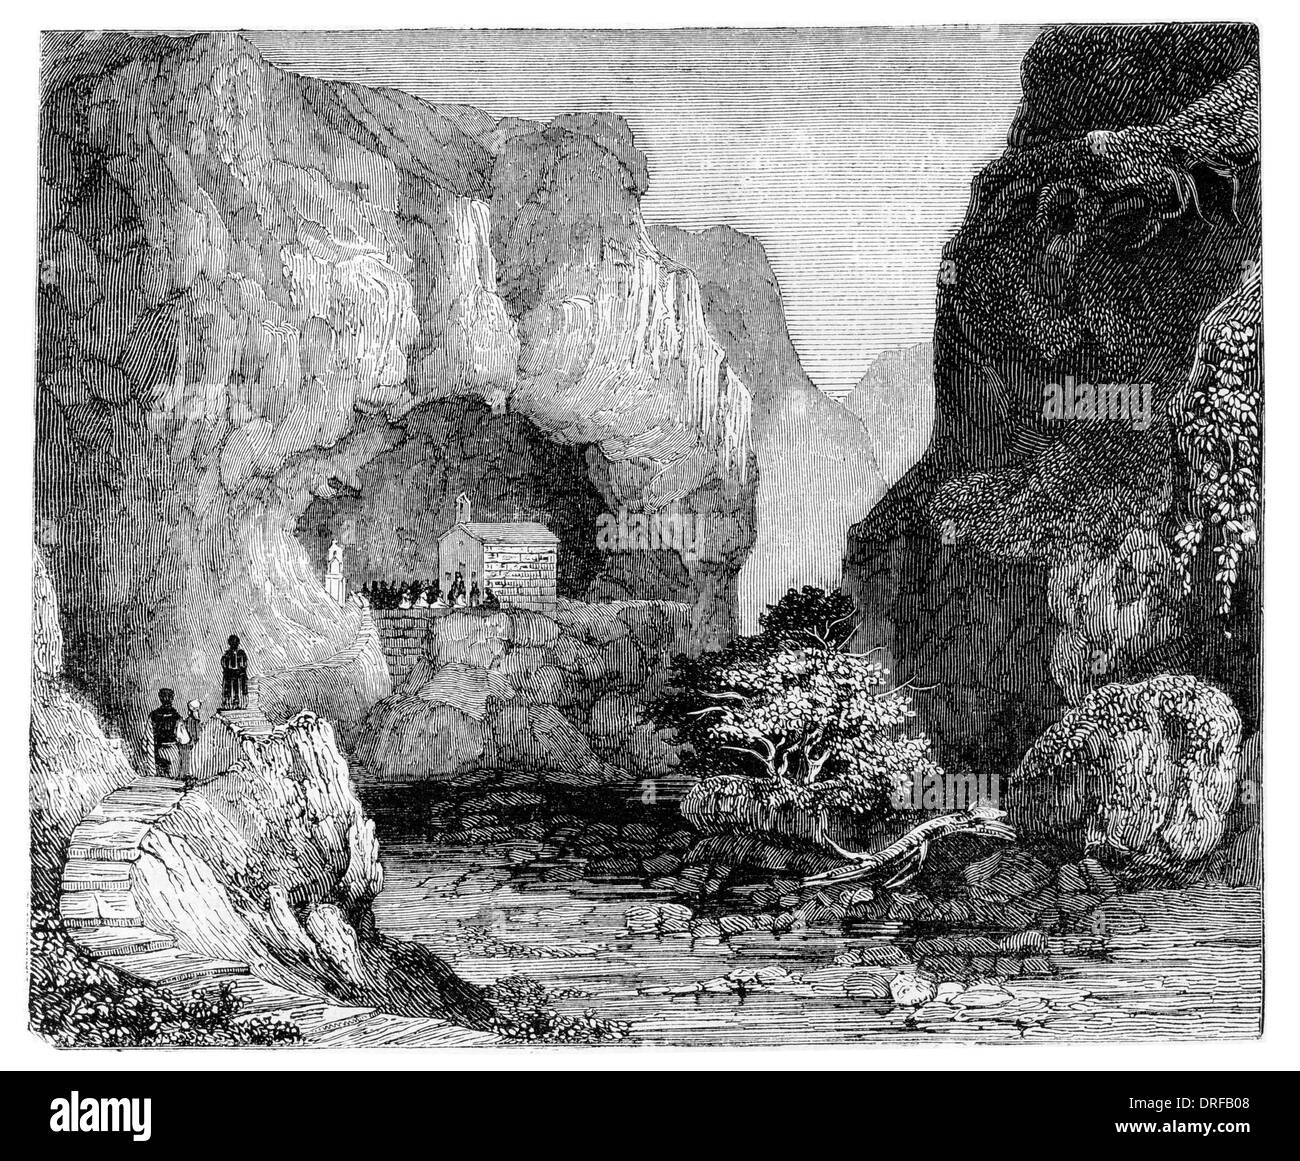 Grotta naturale, dedicato a San Paolo, nell'isola di Malta circa 1854 Foto Stock